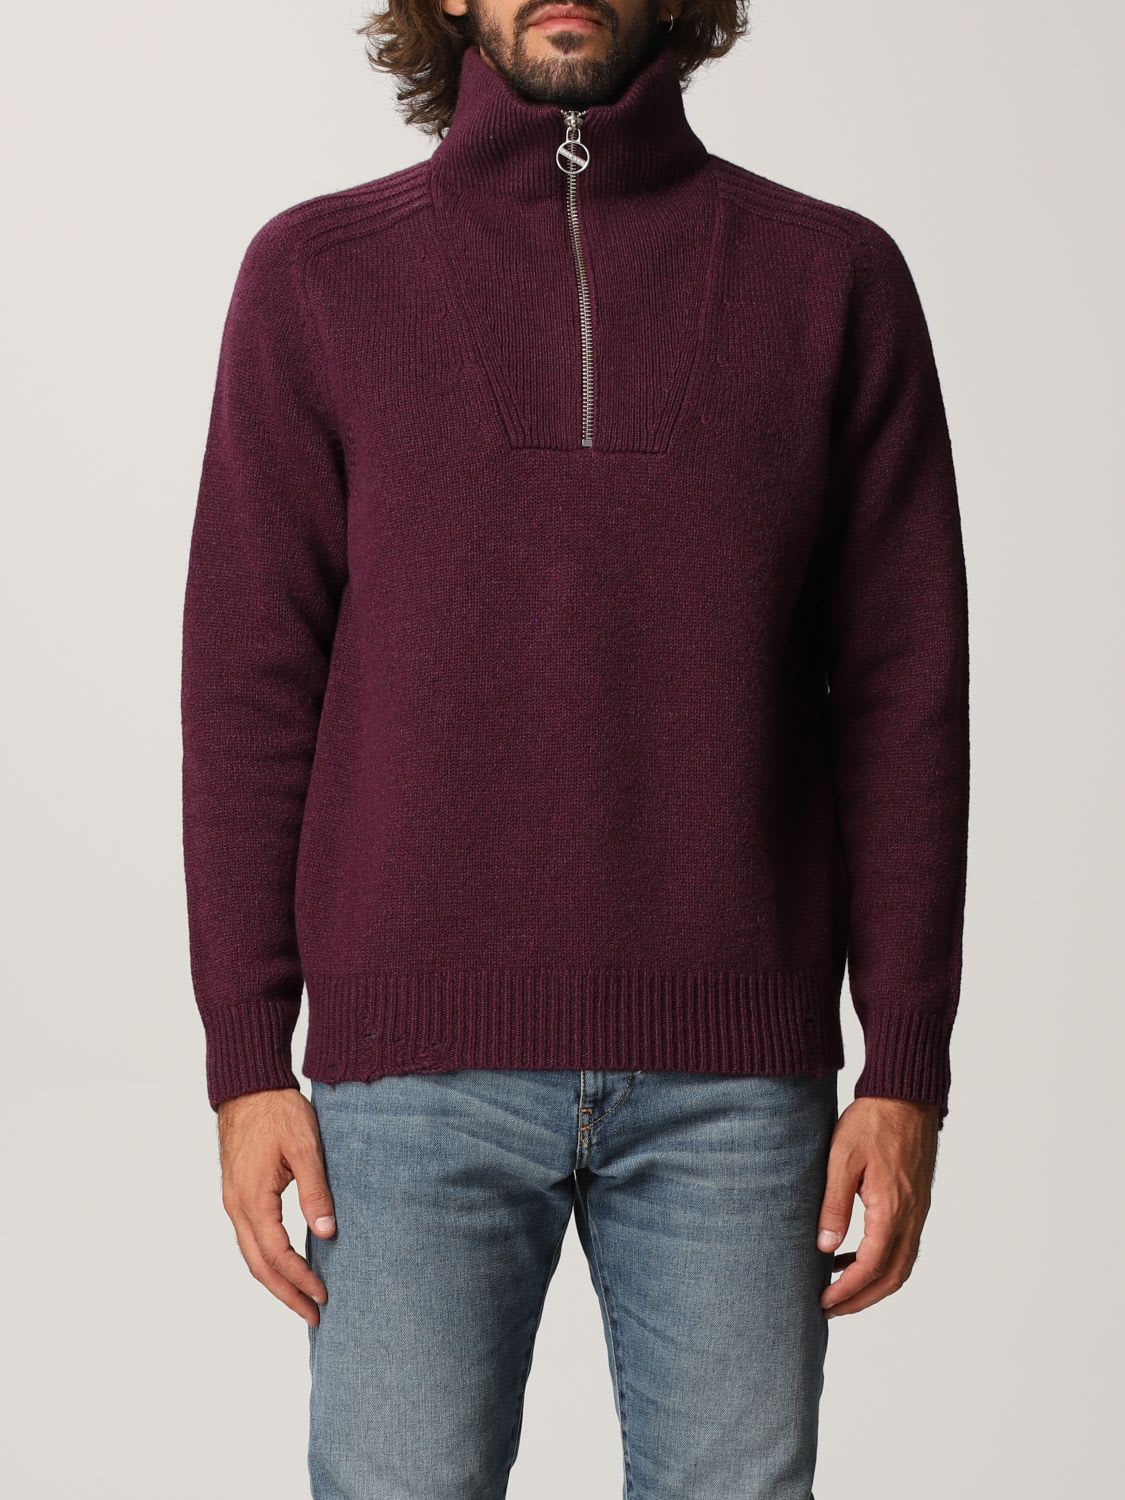 Diesel Sweater Diesel Pullover In Wool Blend With Zip